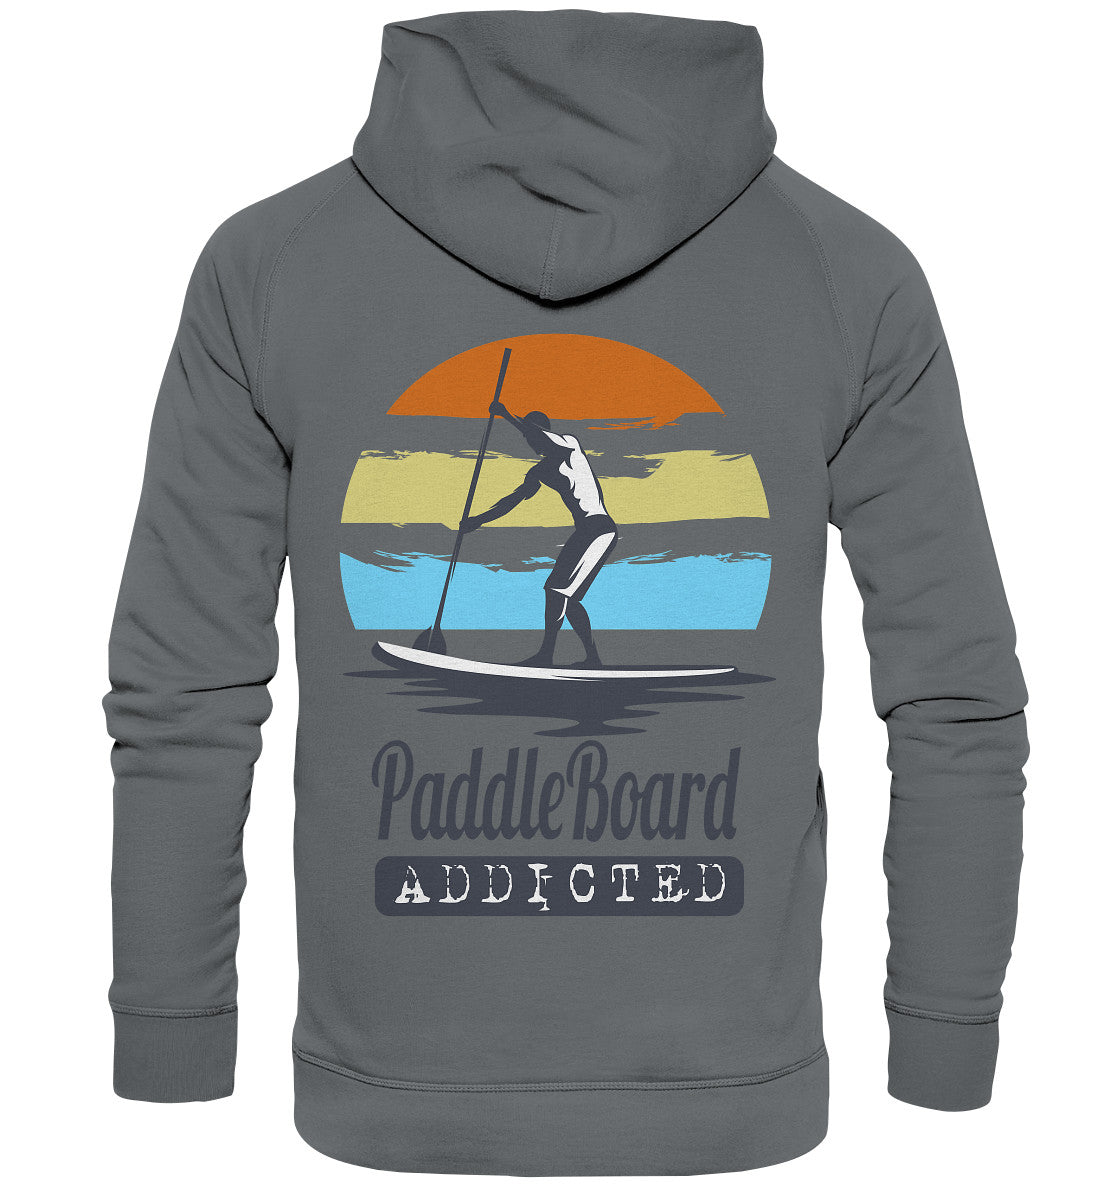 PaddleBoard Addicted - Basic Unisex Hoodie